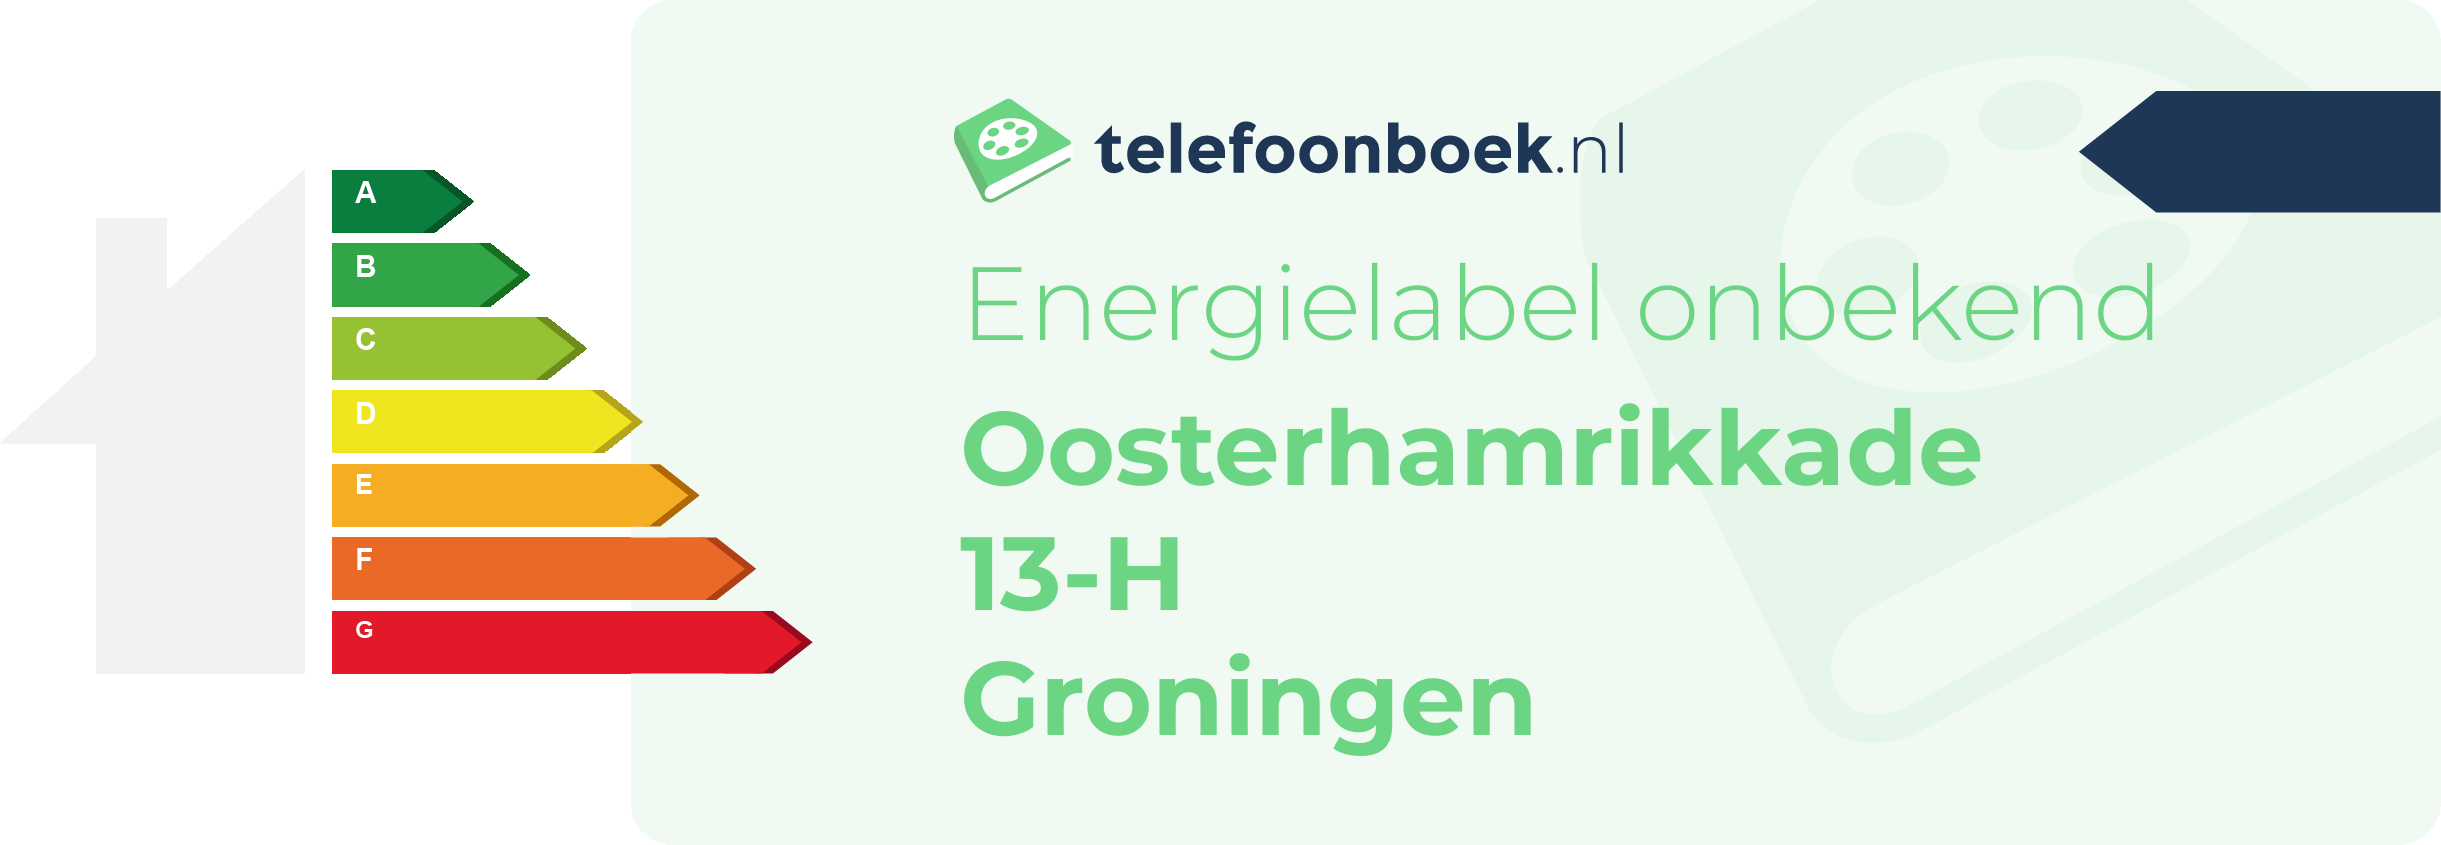 Energielabel Oosterhamrikkade 13-H Groningen